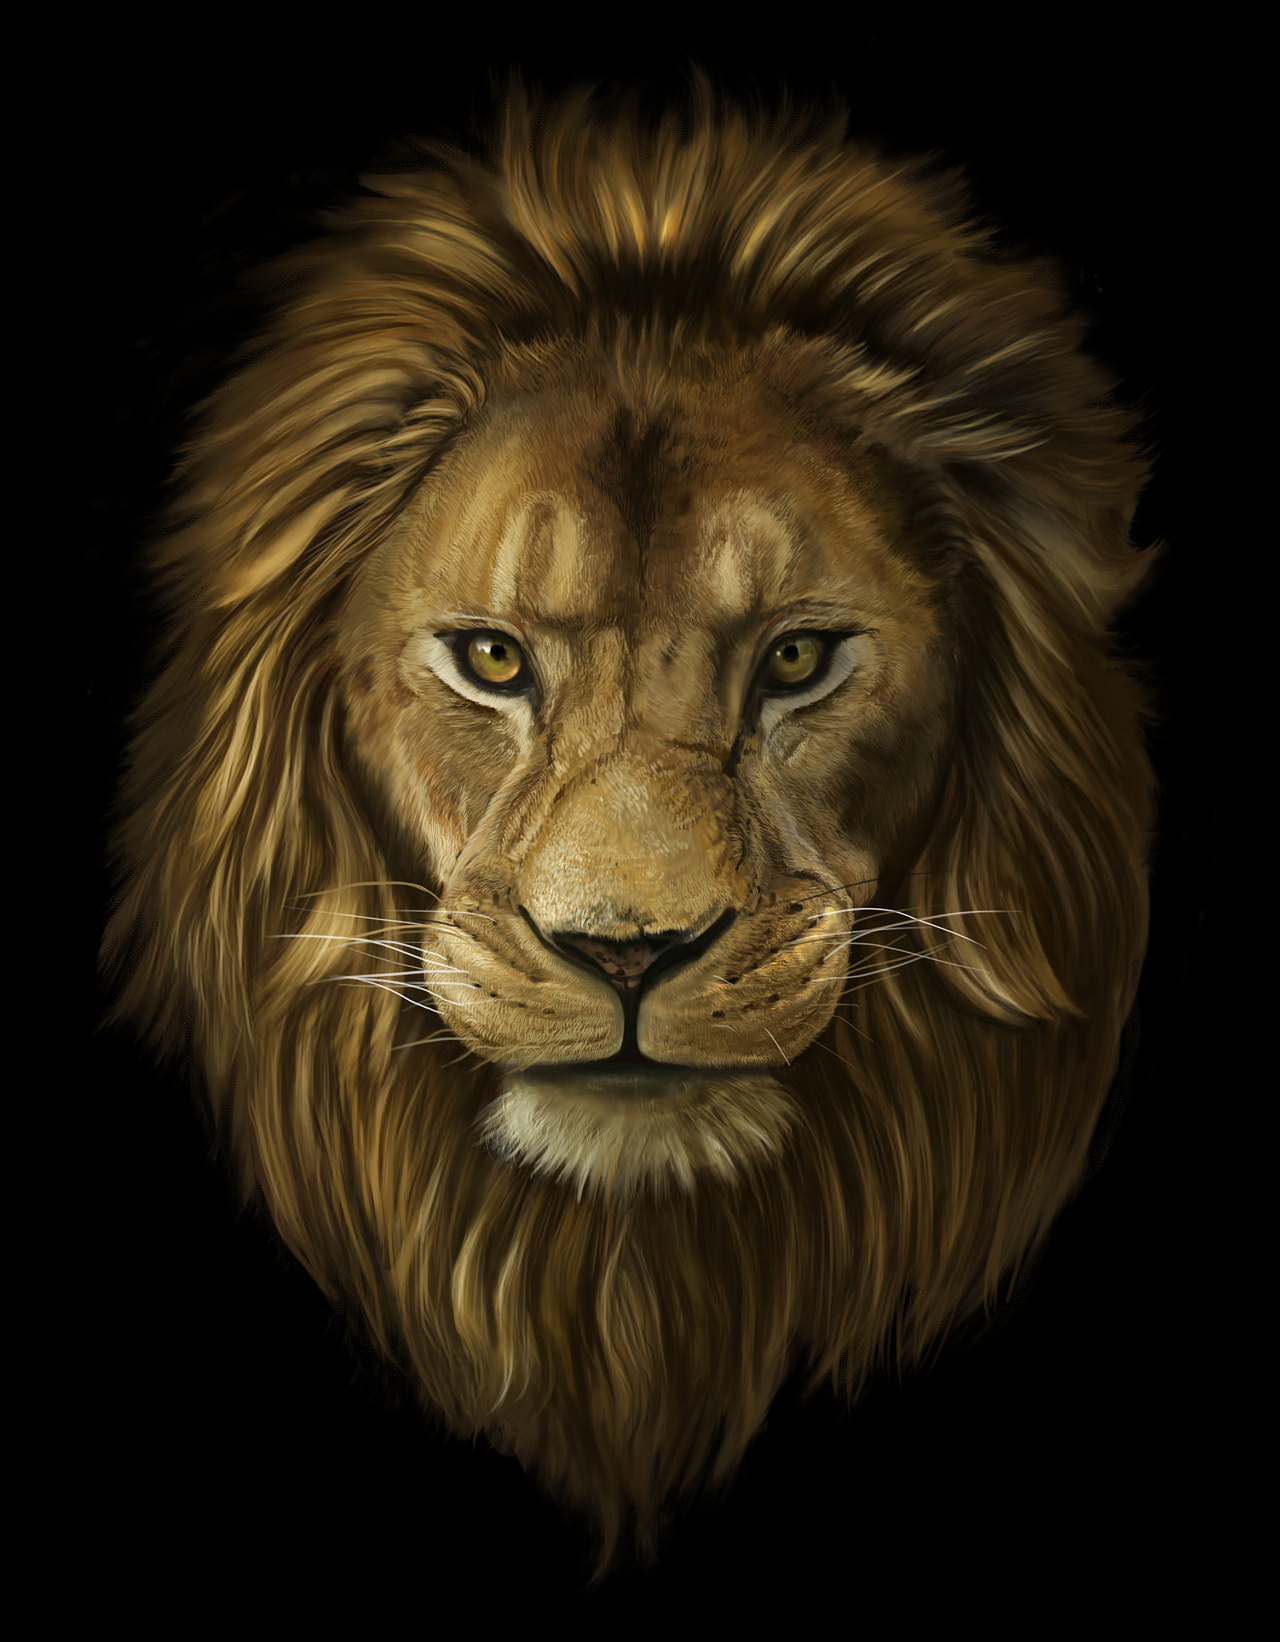 霸气动物狮子主题桌面壁纸高清图片大全_配图网